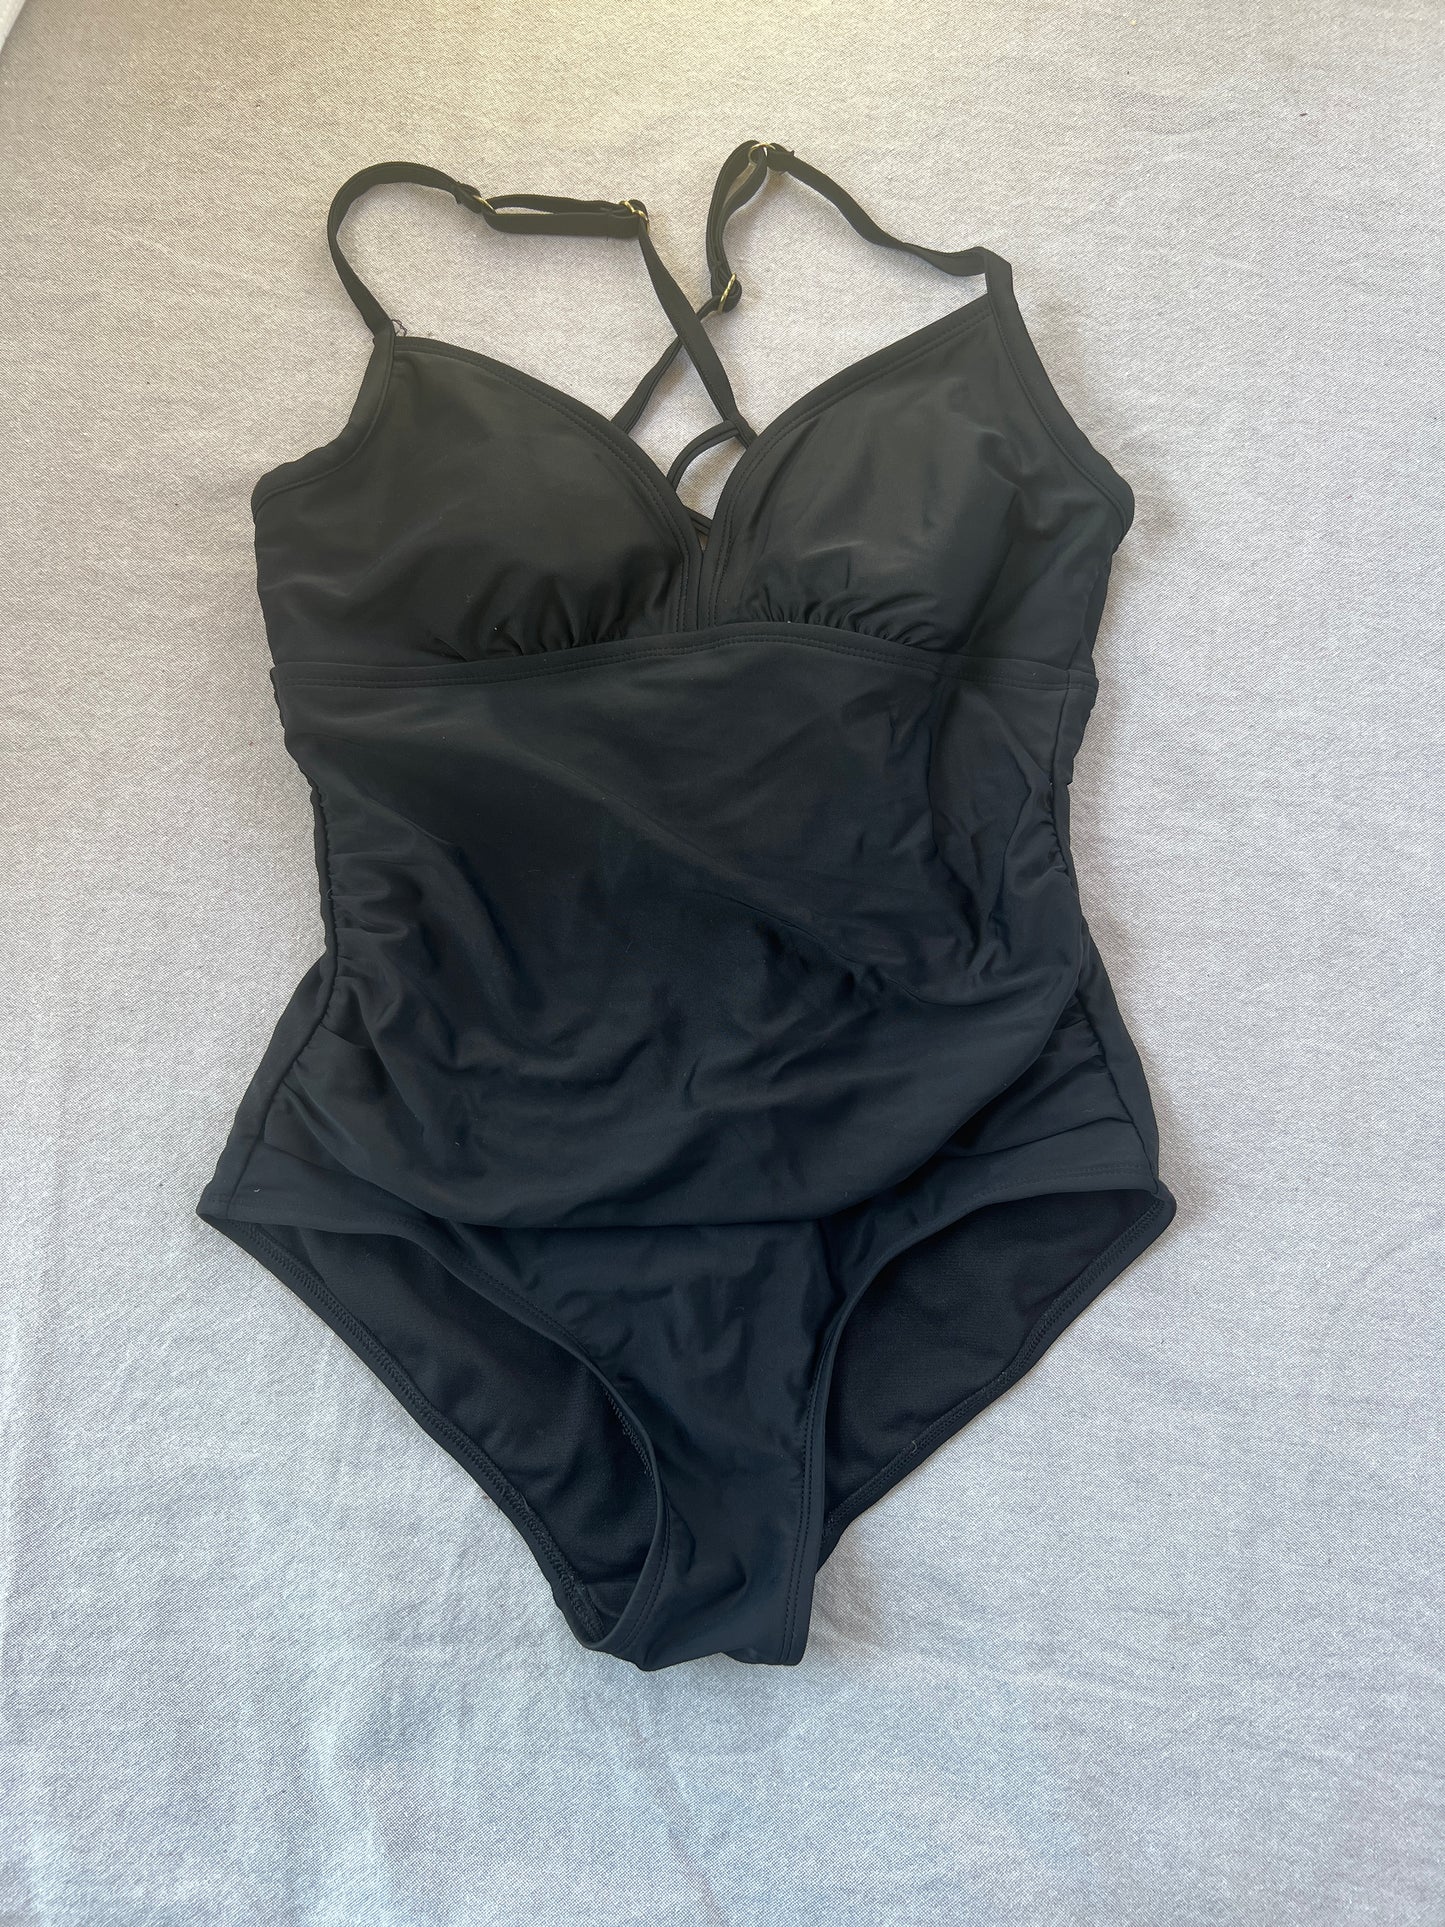 Women's Med, Kona Sol (target) one-piece swimsuit, EUC